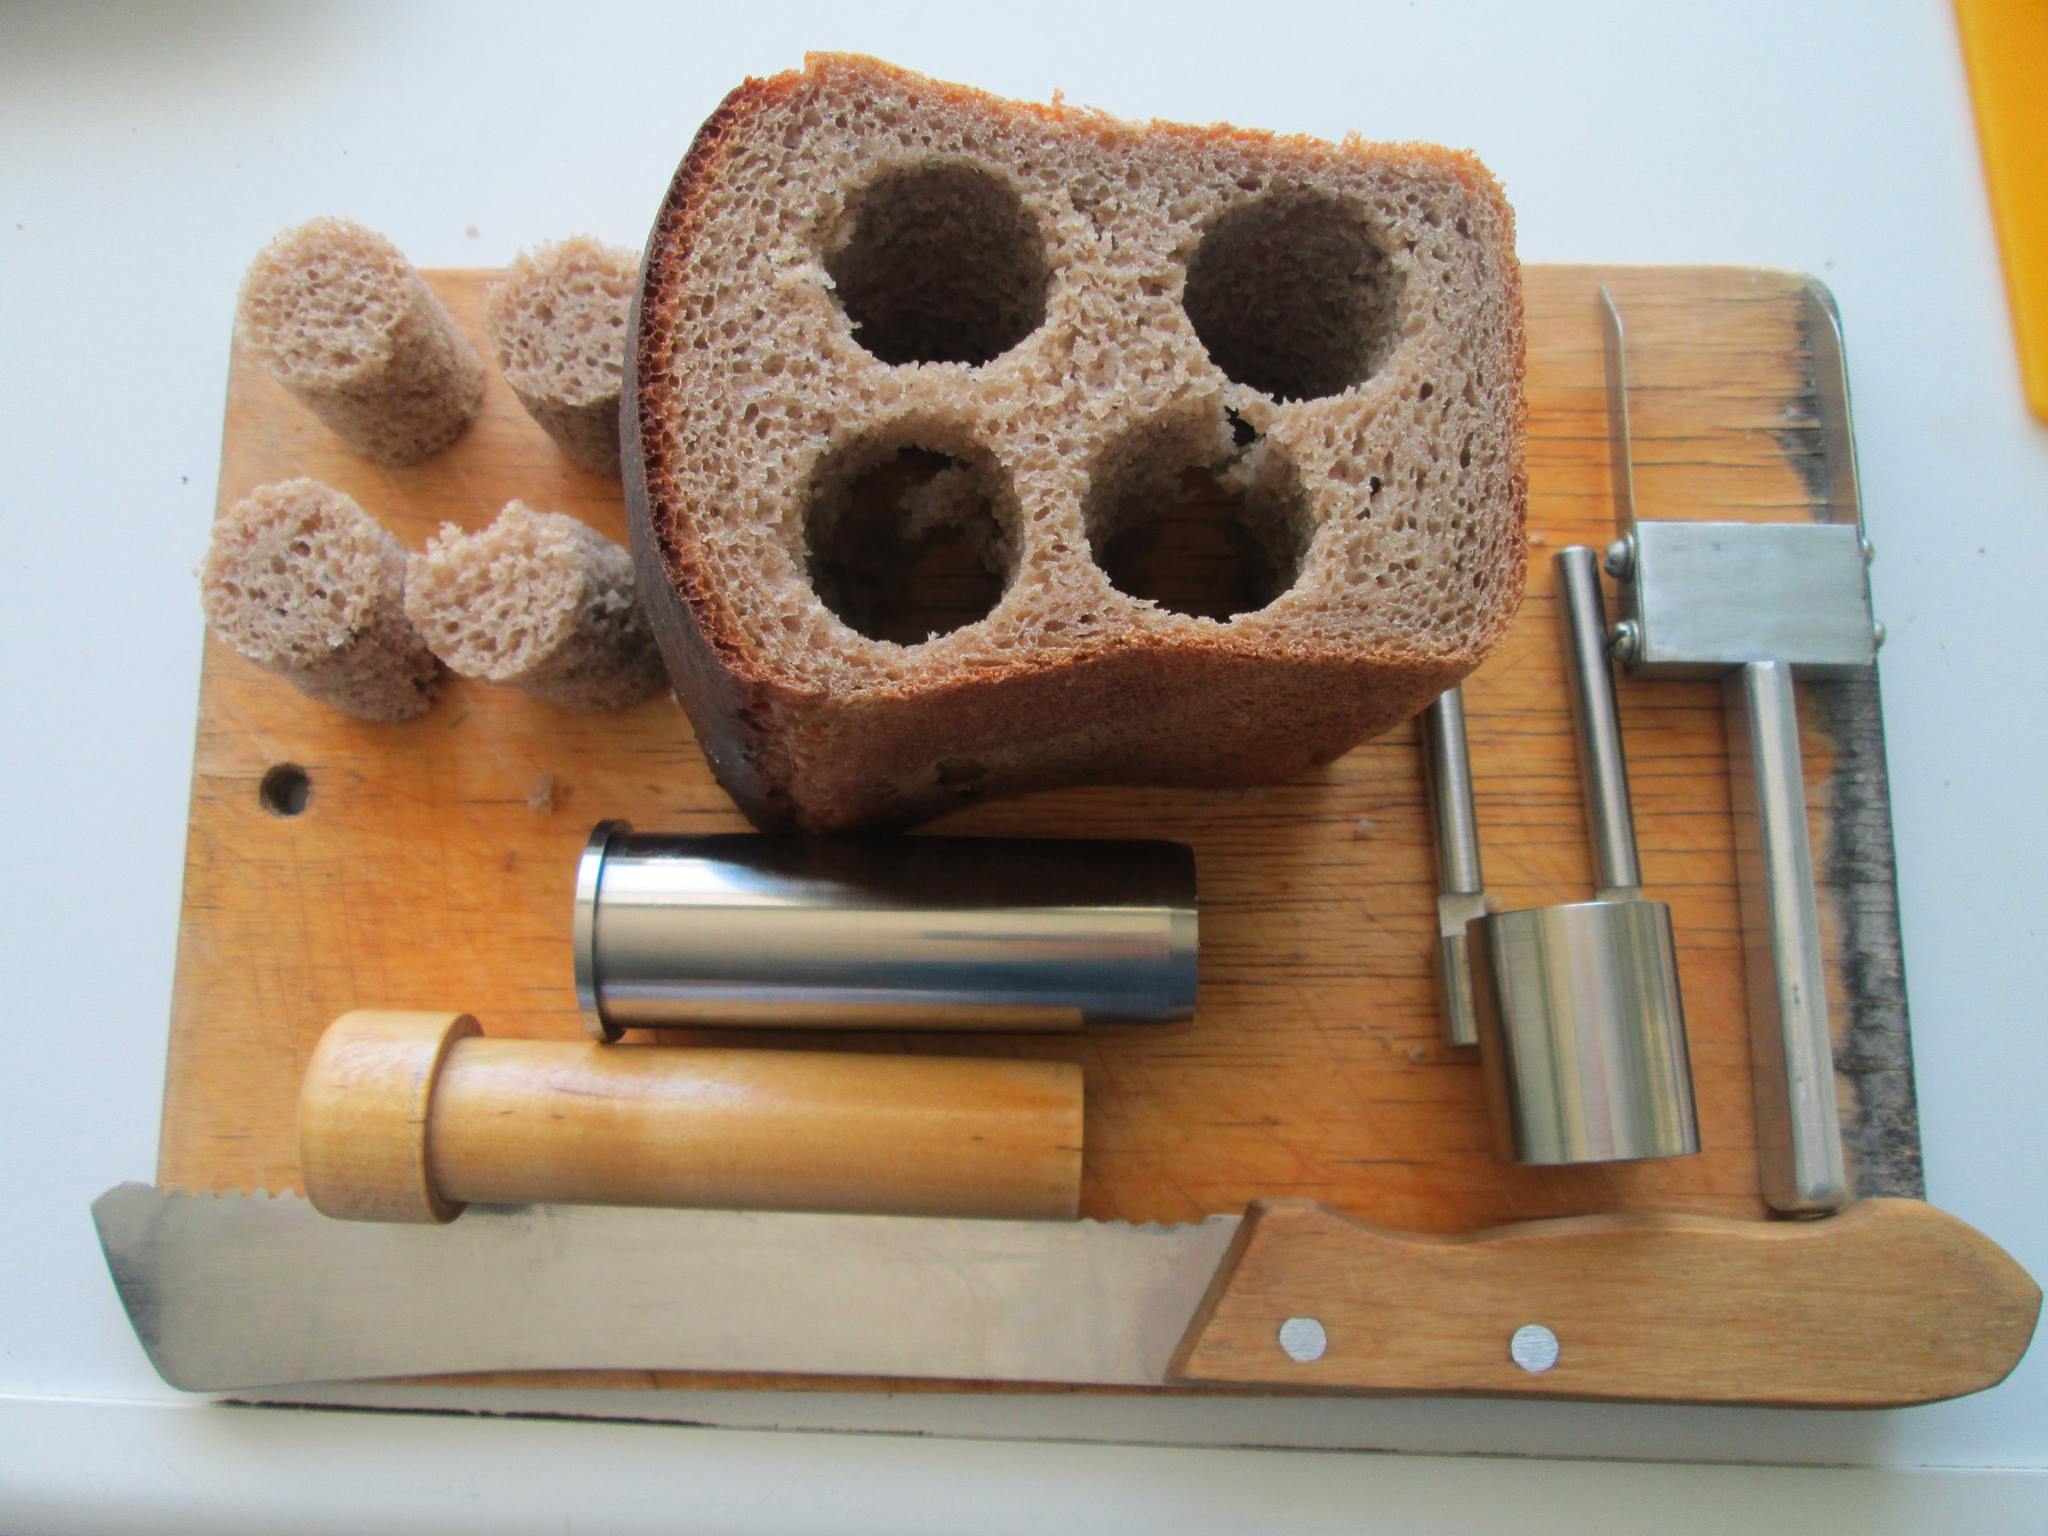 200 килограммов хлеба снято с реализации в Нижегородской области - фото 1